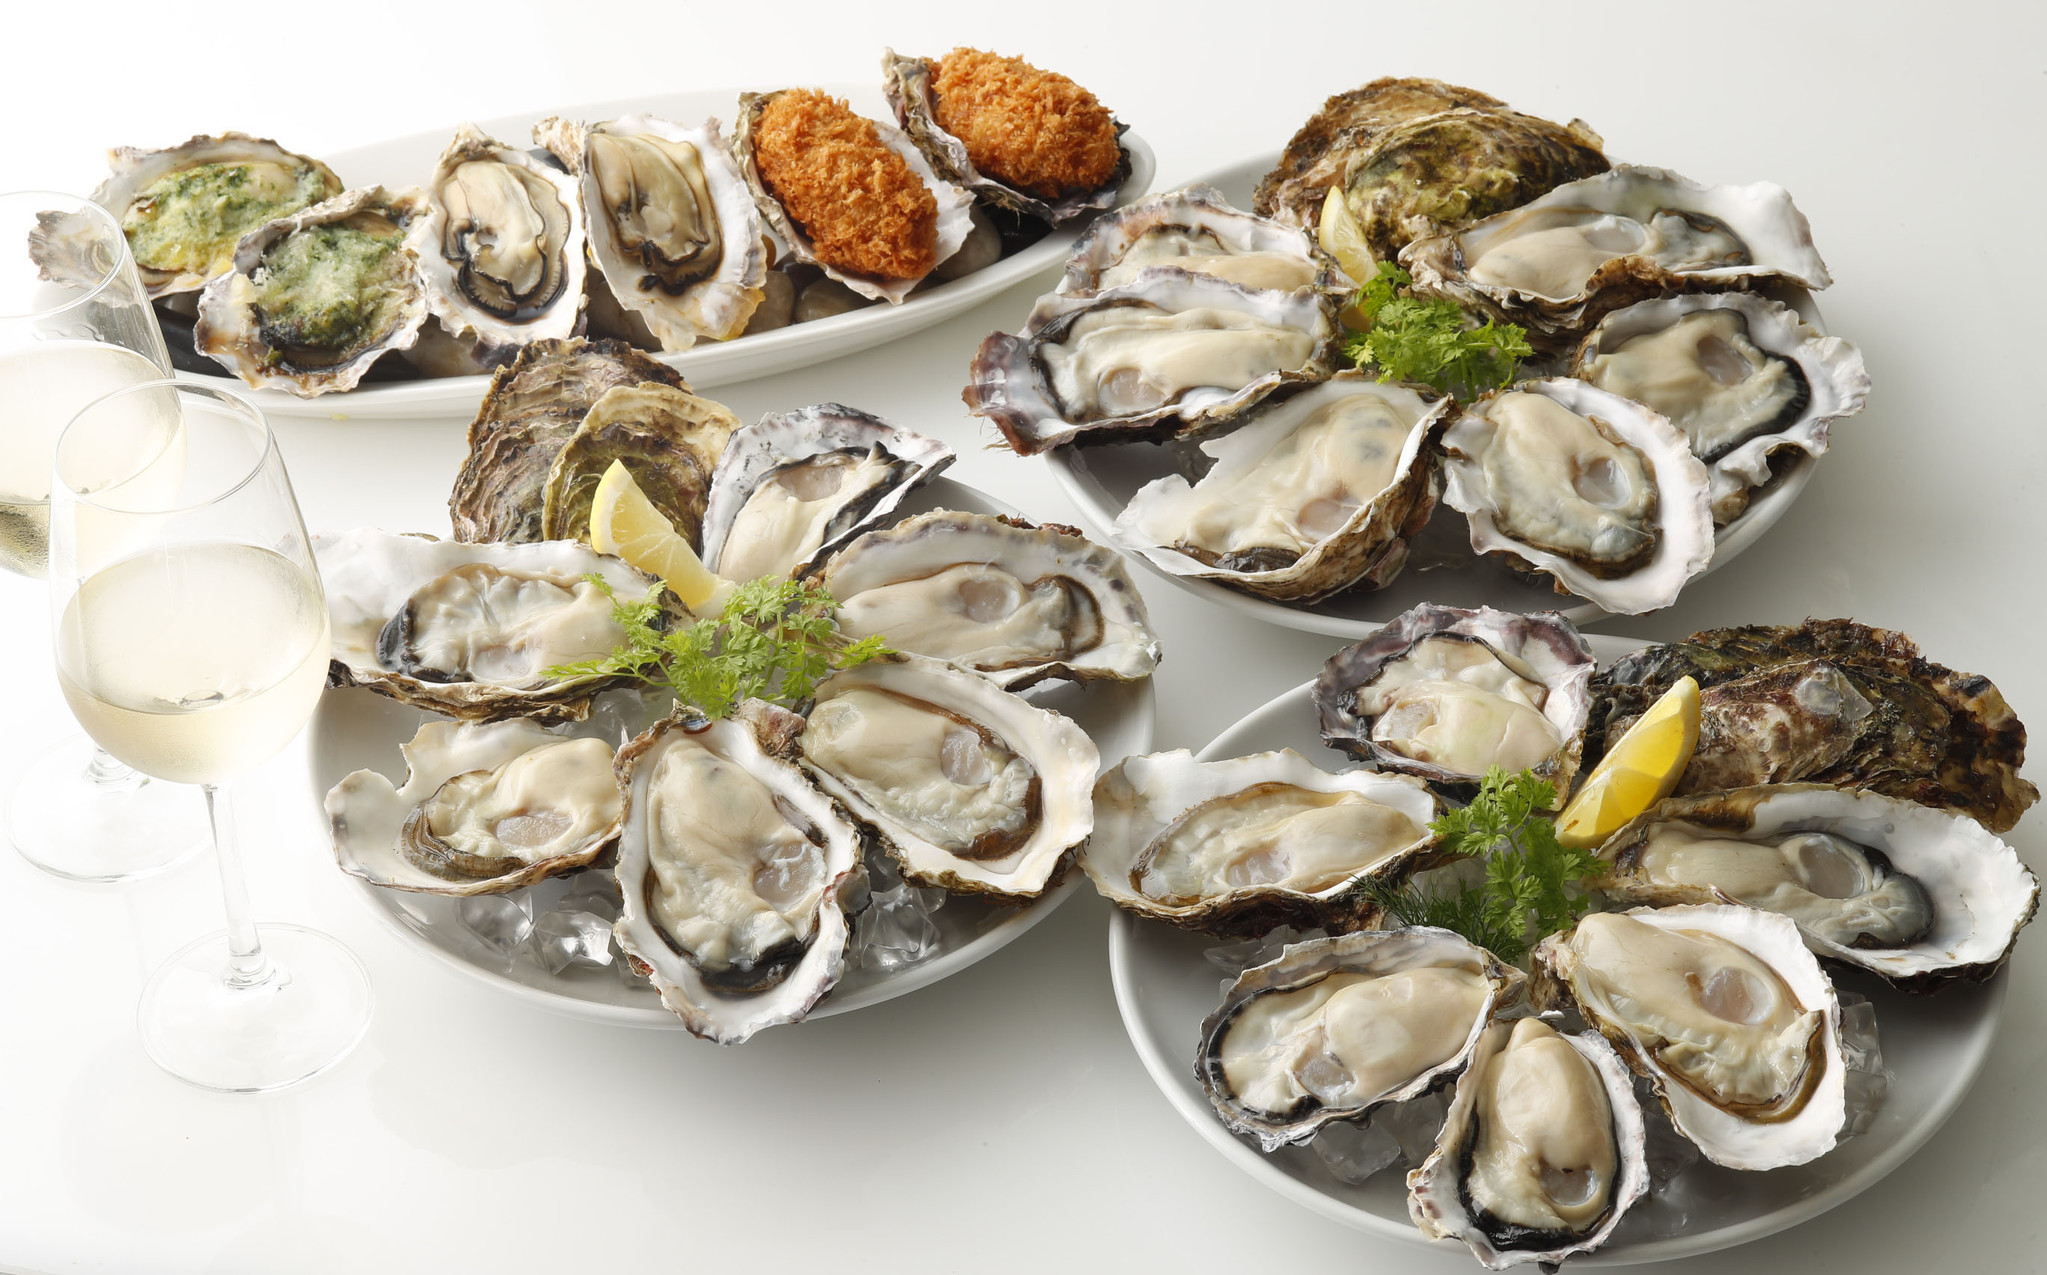 18年最後の牡蠣食べ放題 忘年会にもぴったり 生牡蠣など牡蠣料理6品 食べ放題 株式会社ゼネラル オイスターのプレスリリース